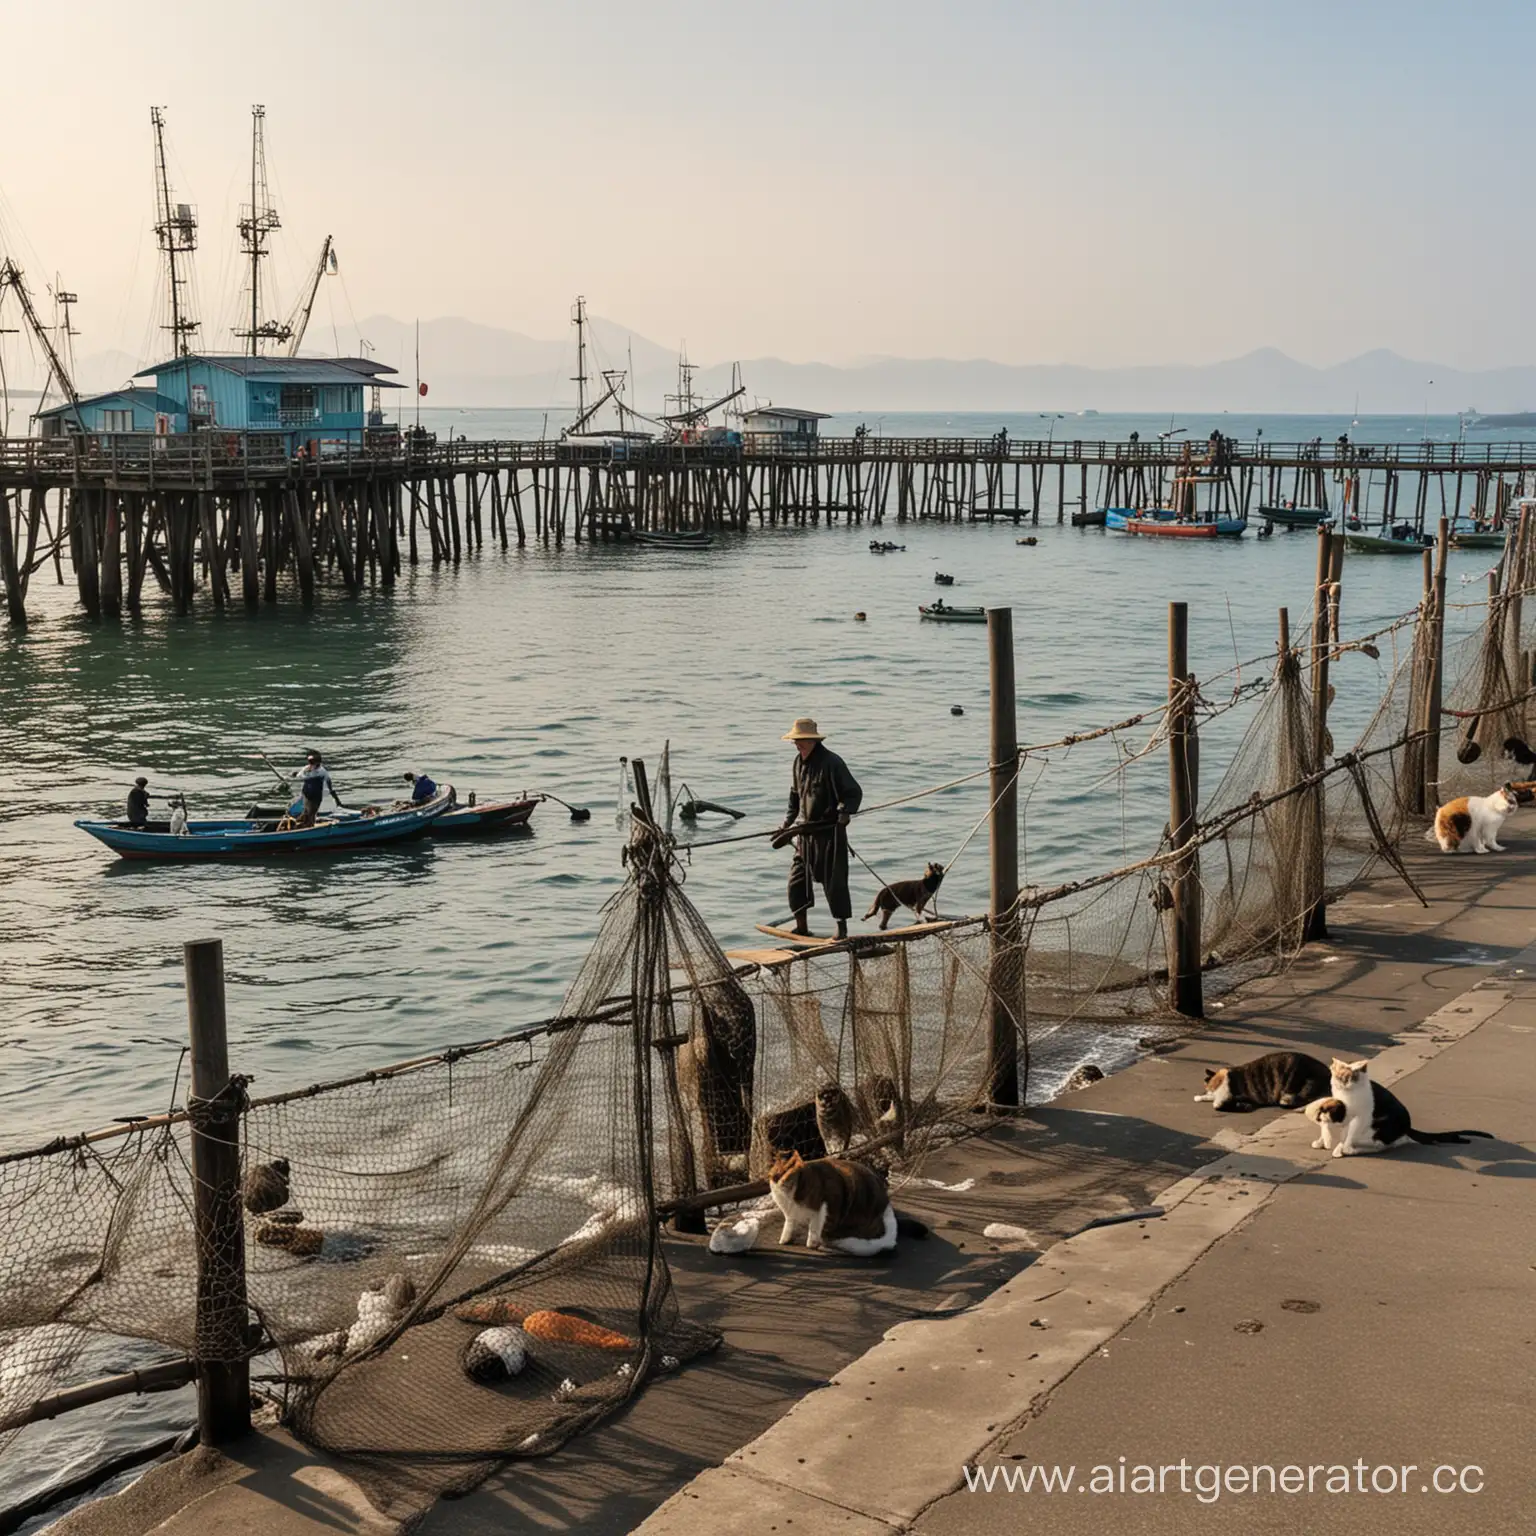 японские рыбаки с сетями возле пристани, а вокруг них много котов